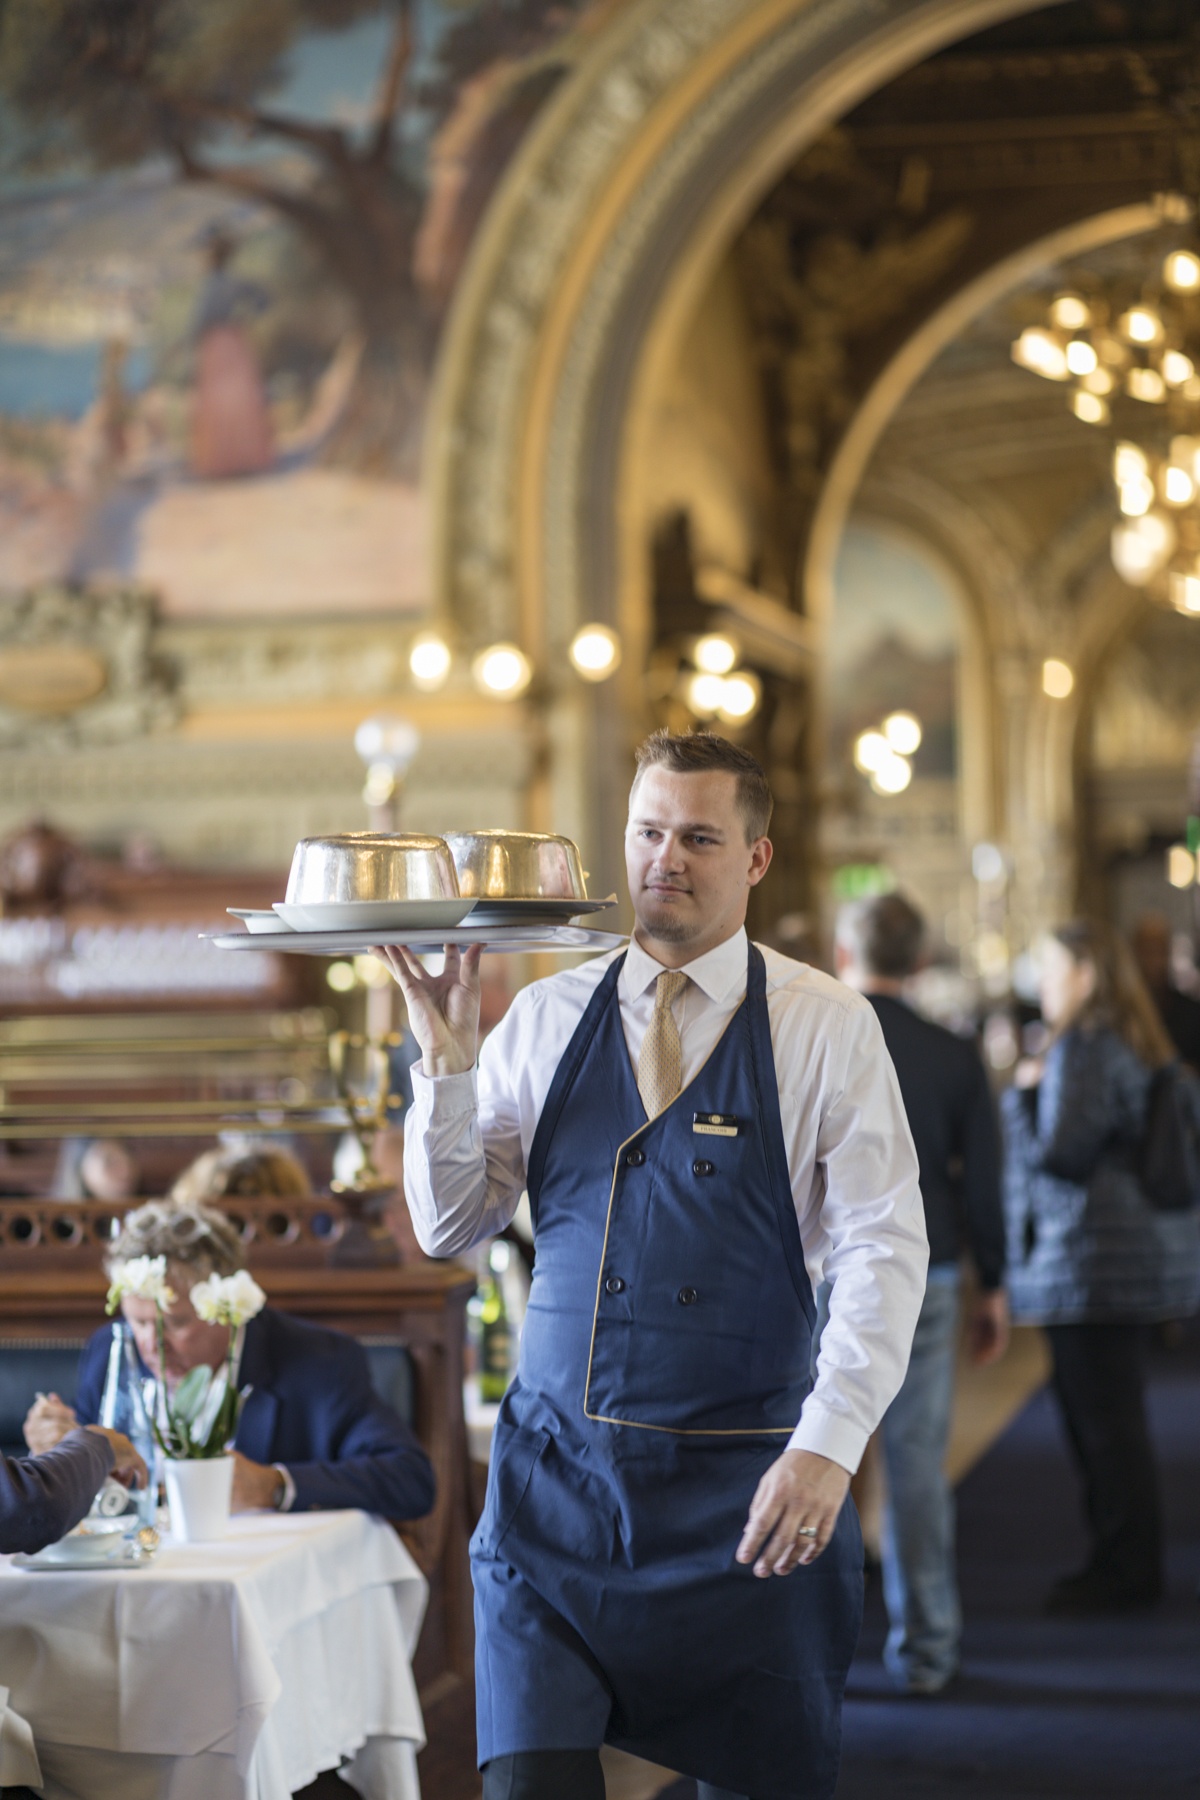 Choáng ngợp với nhà hàng hơn 120 tuổi như cung điện ở Paris - Ảnh 2.